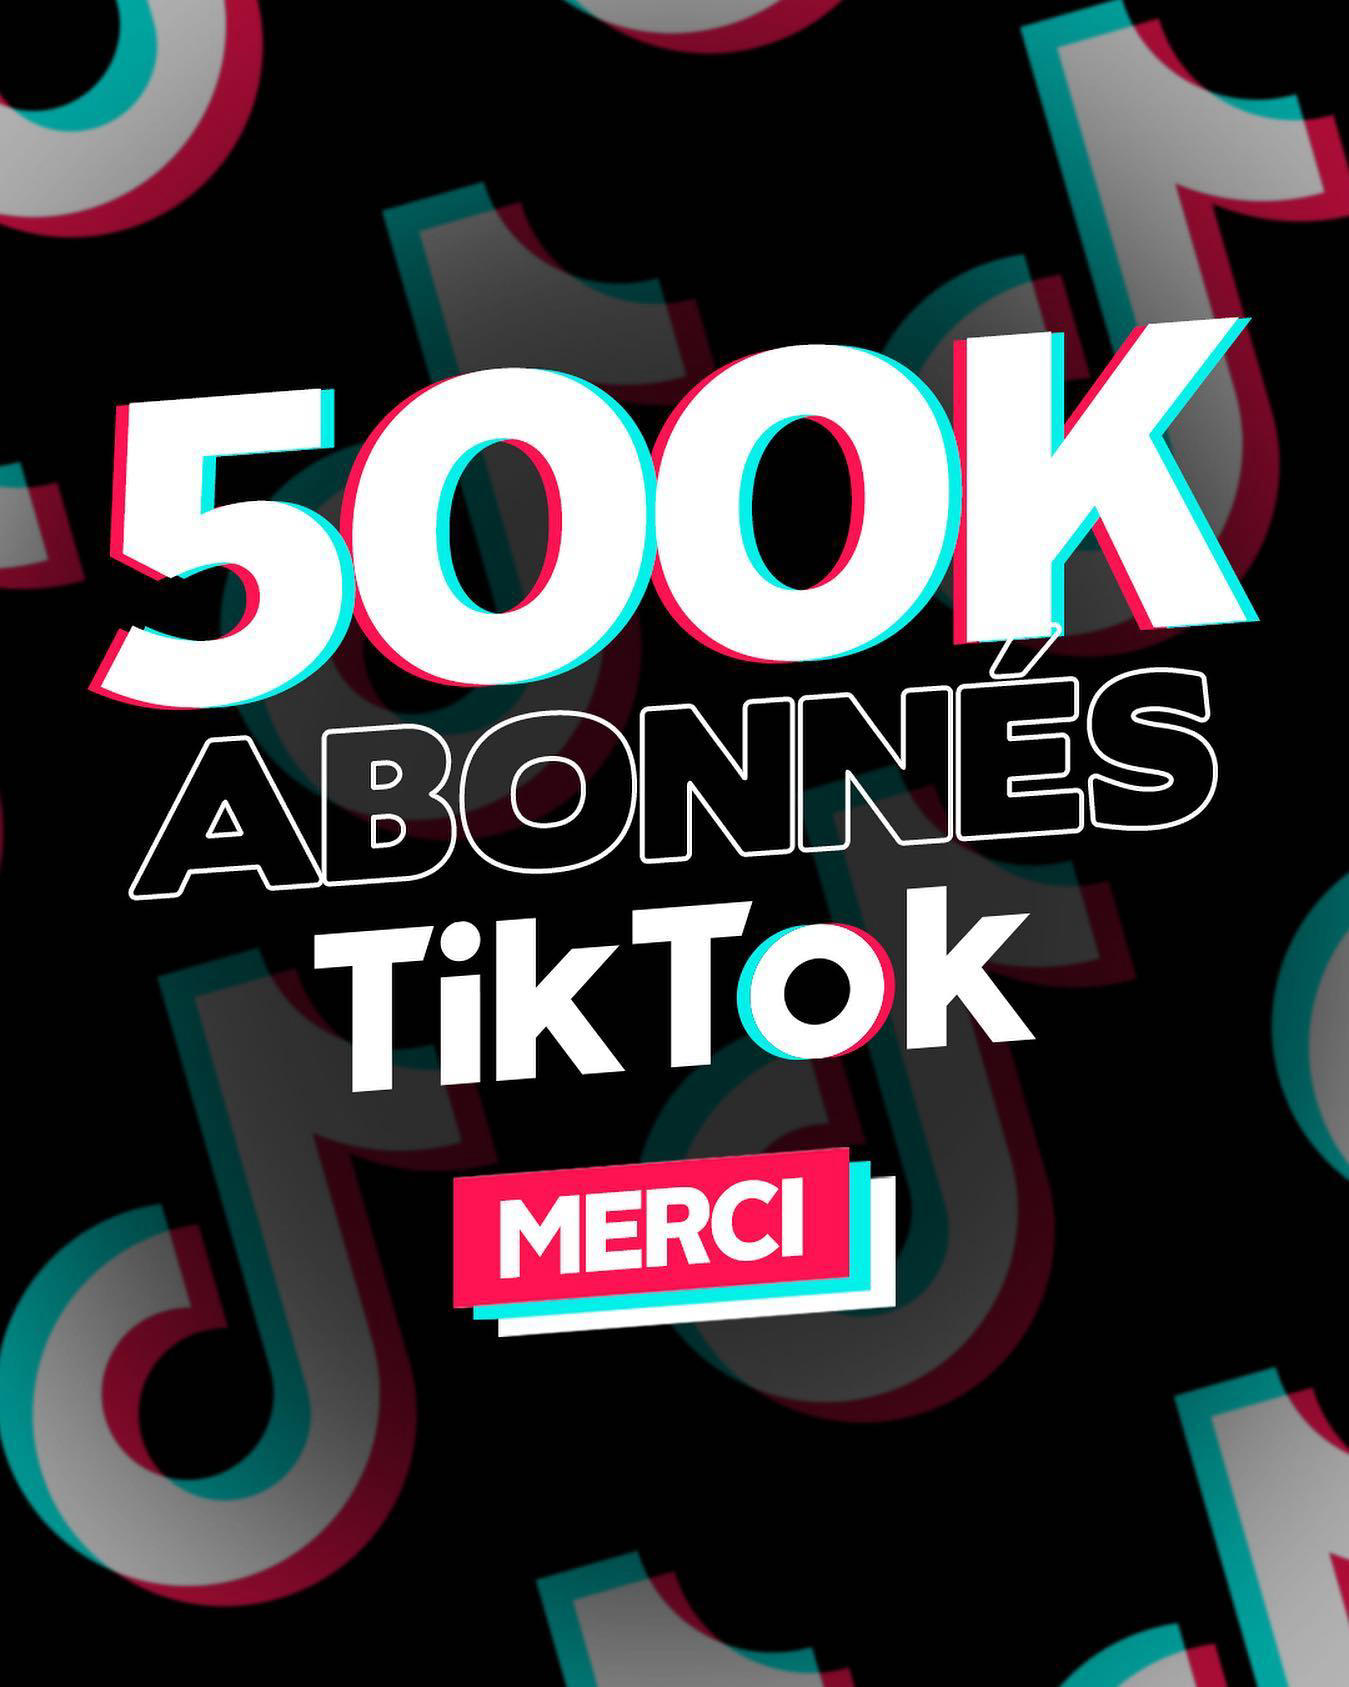 image 0 Booska-P - La team, vous êtes plus de 500 000 à nous suivre sur TikTok, merci à vous